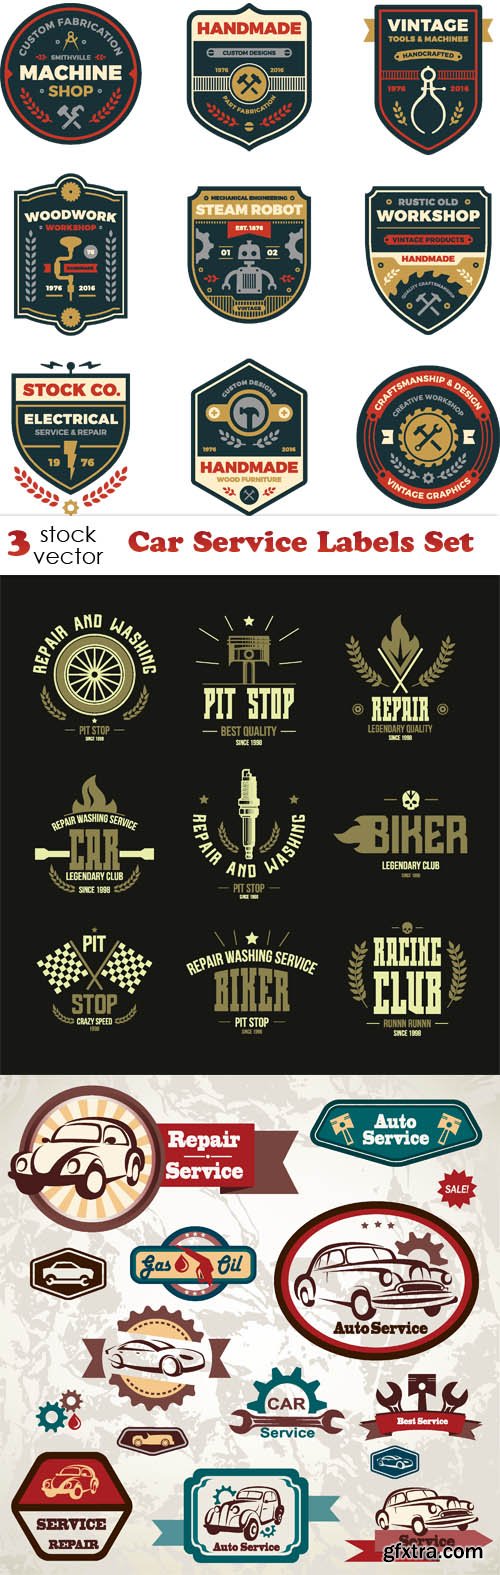 Vectors - Car Service Labels Set